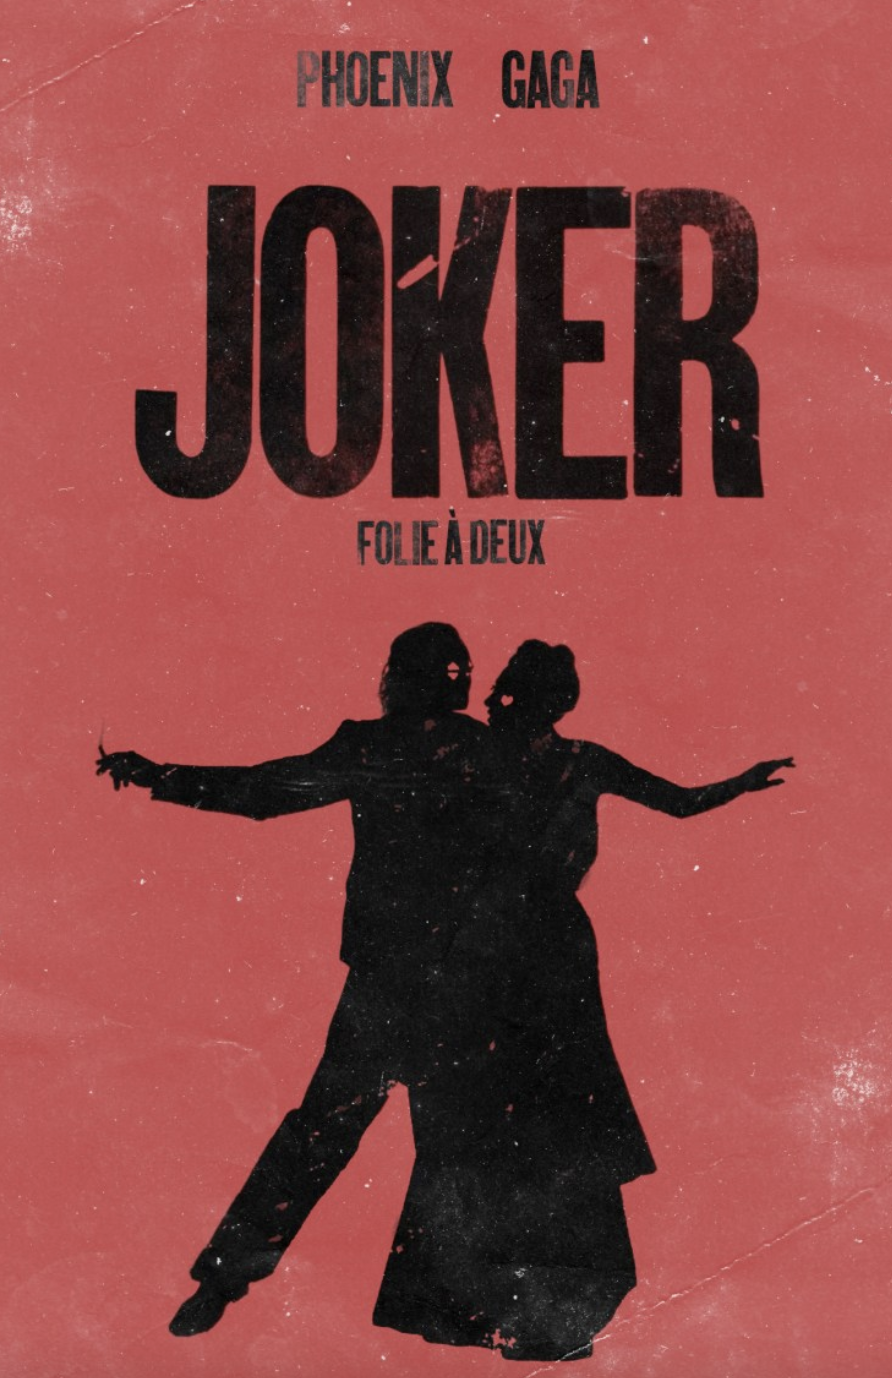 Joker 2 or Joker: Folie a Deux 